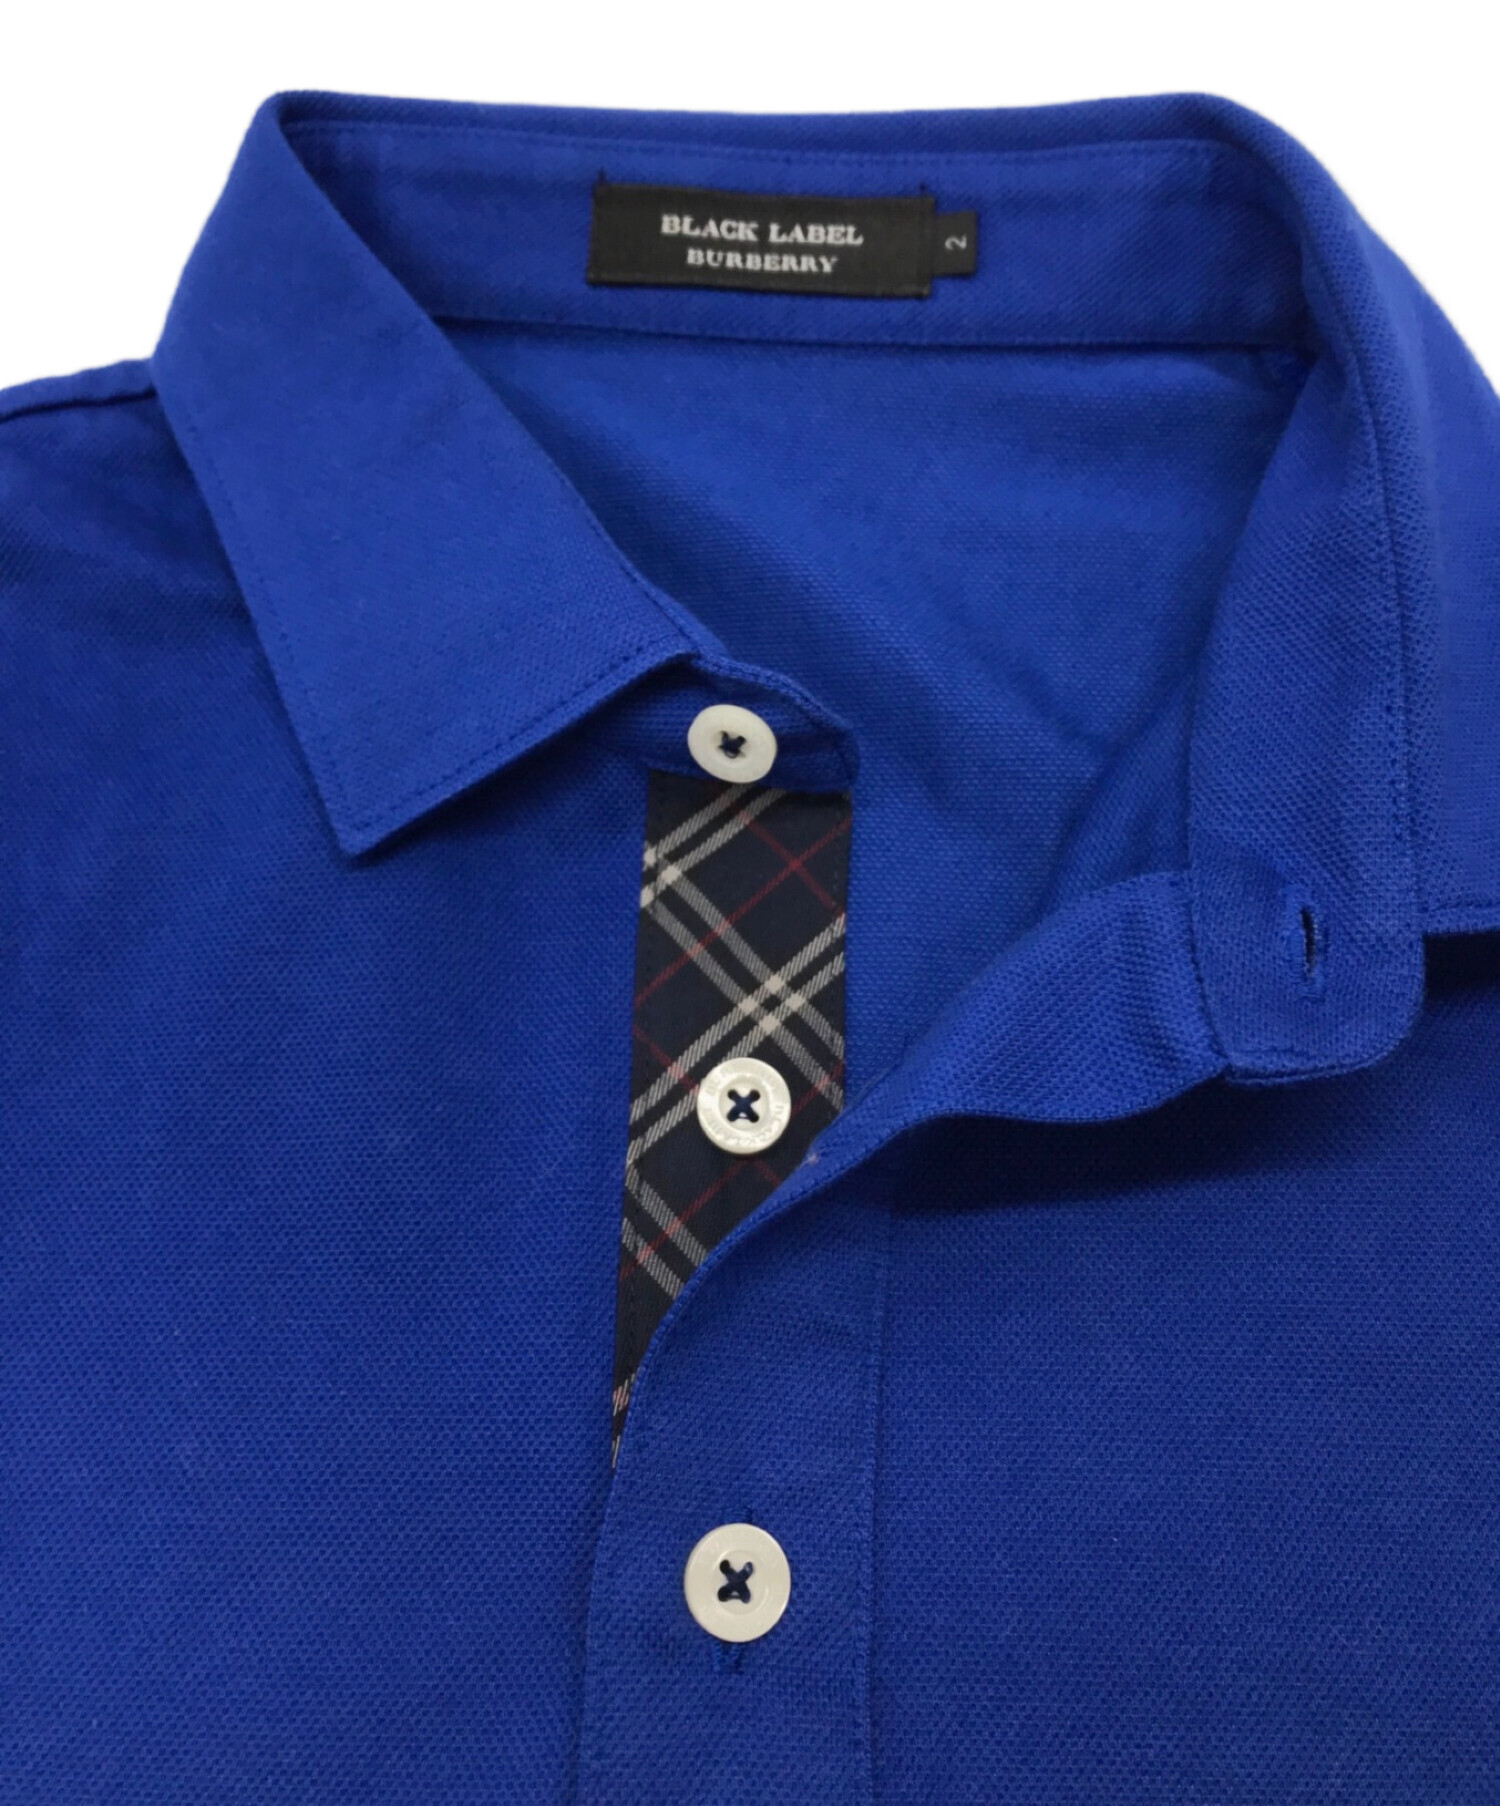 BURBERRY BLACK LABEL (バーバリーブラックレーベル) ポロシャツ ブルー サイズ:SIZE 2